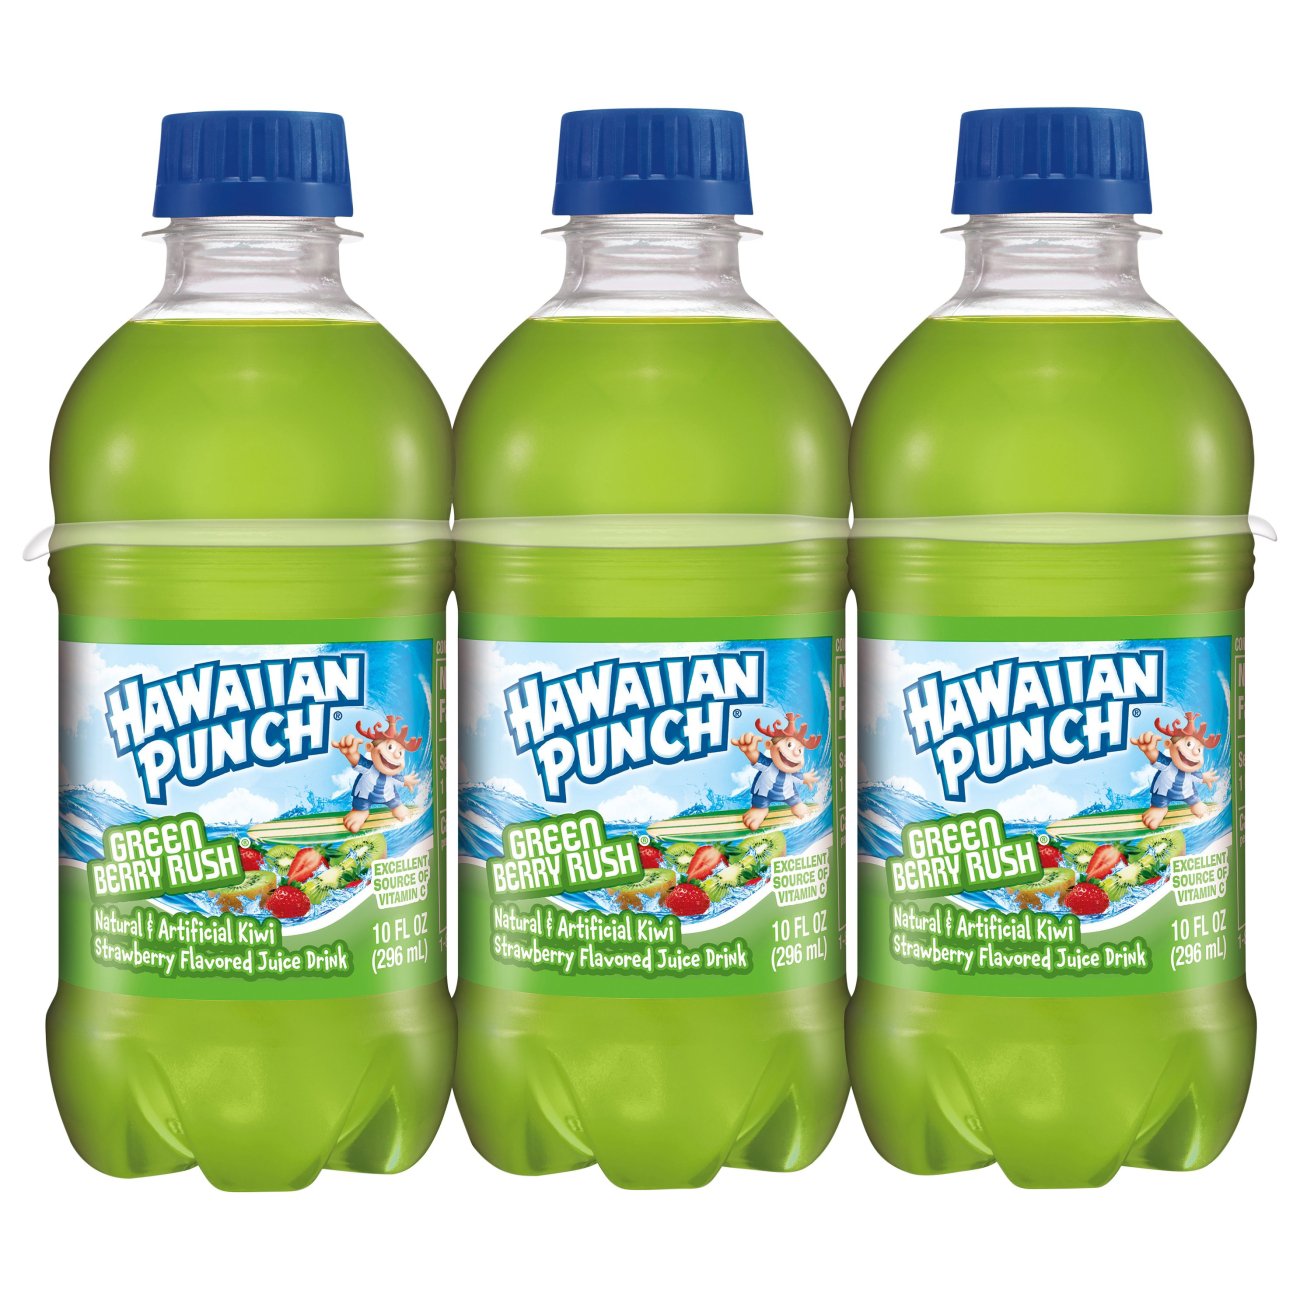 Hawaiian Punch Juice Drink, Fruit Juicy Red « Discount Drug Mart